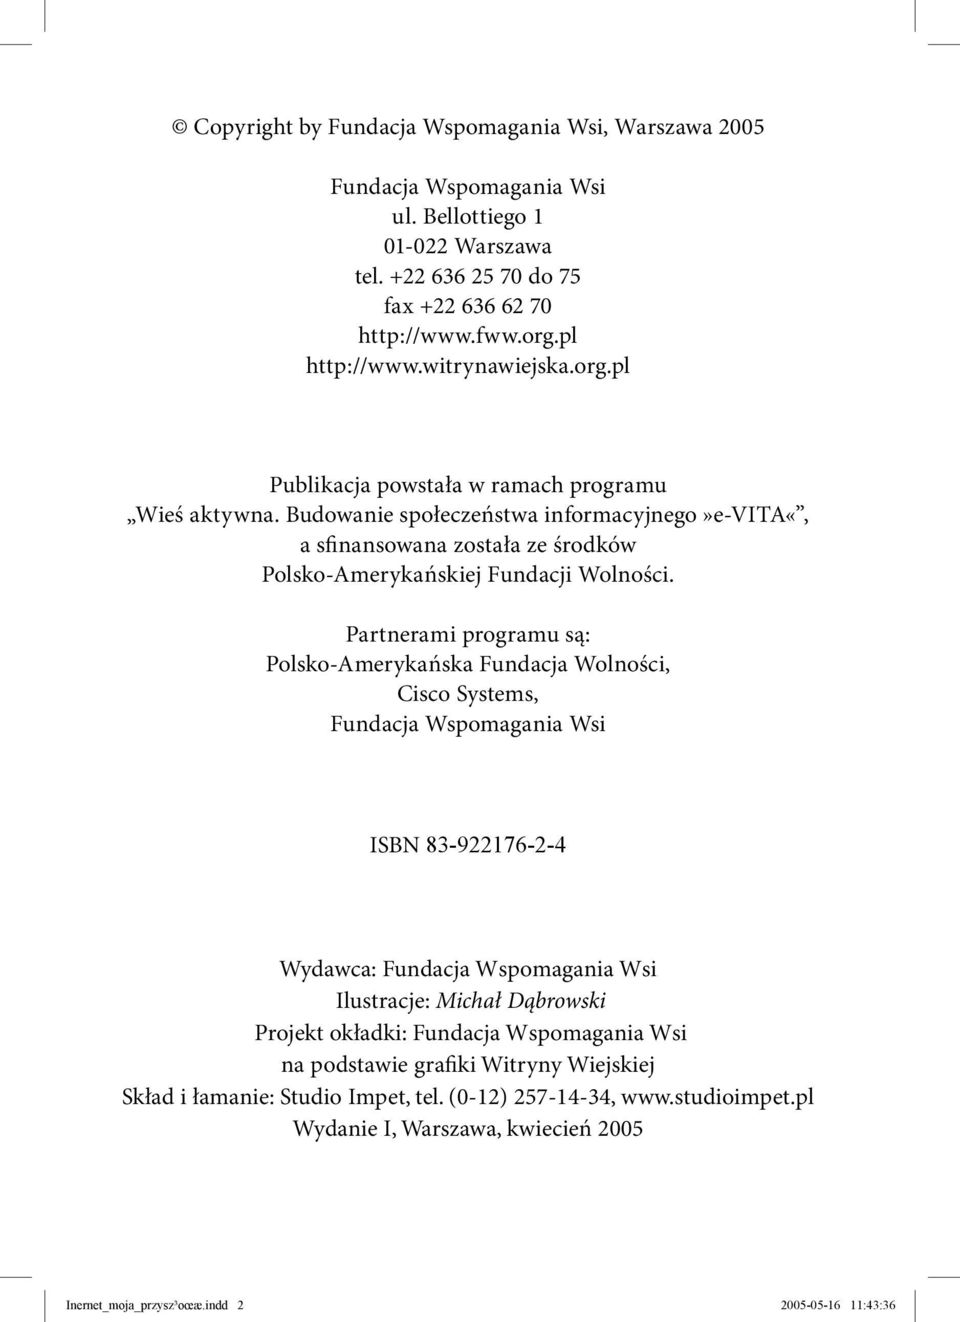 Partnerami programu są: Polsko-Amerykańska Fundacja Wolności, Cisco Systems, Fundacja Wspomagania Wsi ISBN 83-922176-2-4 Wydawca: Fundacja Wspomagania Wsi Ilustracje: Michał Dąbrowski Projekt